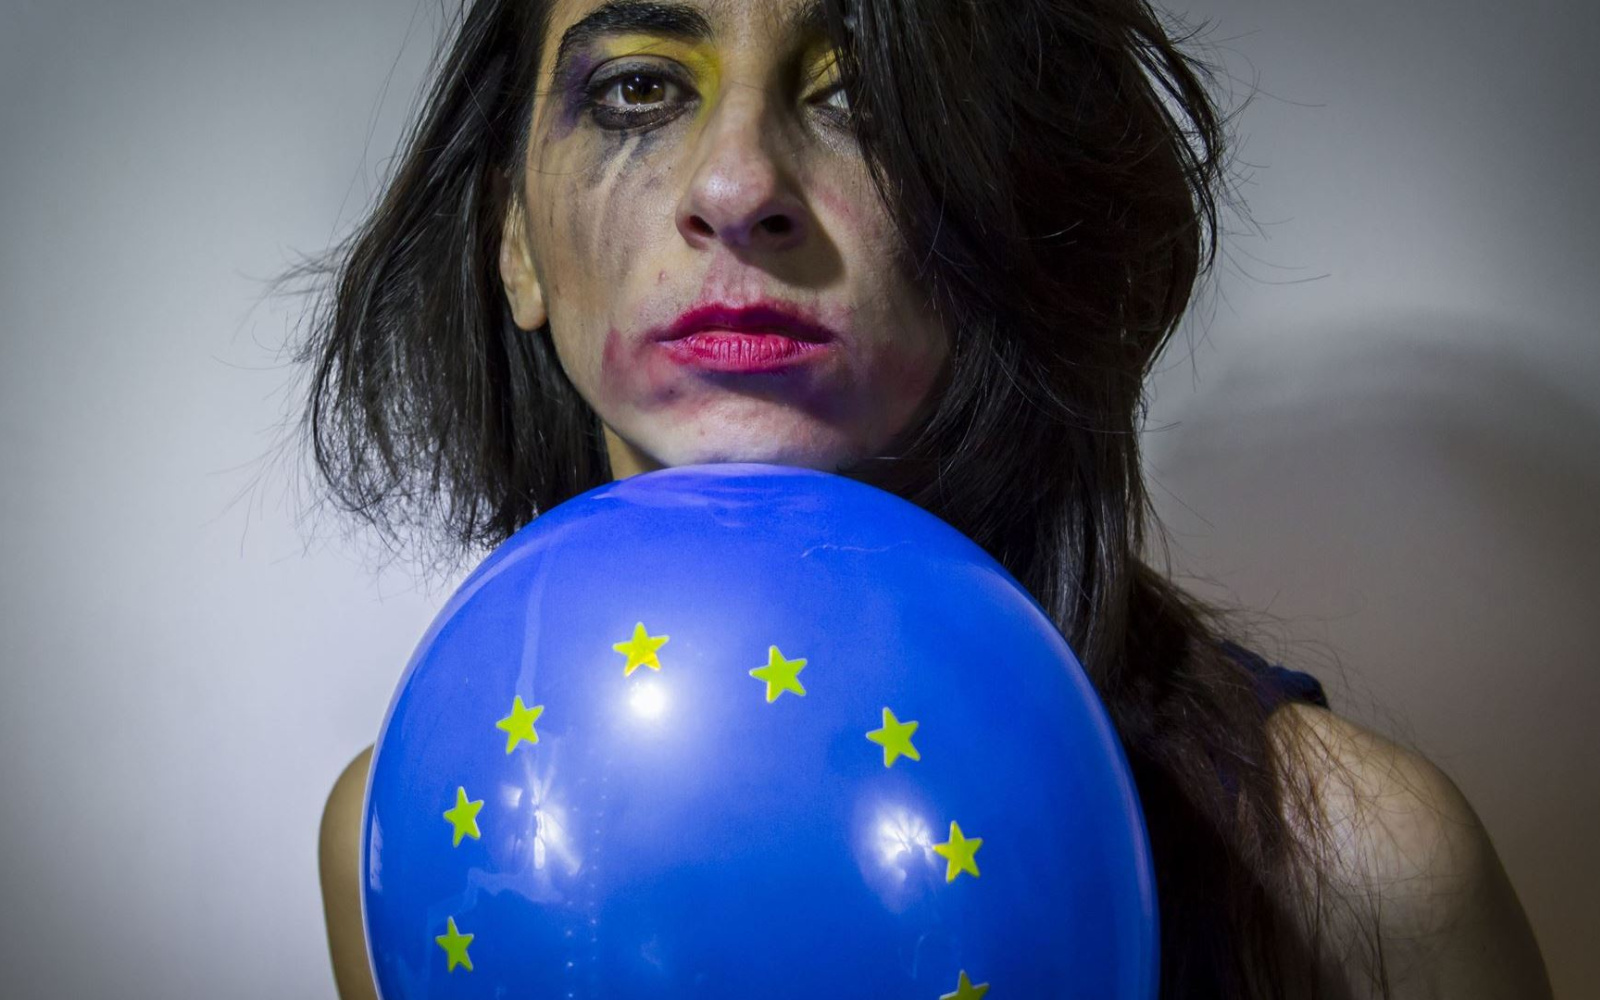 Gesicht einer Frau mit verwischtem Make-Up und Europa-Luftballon